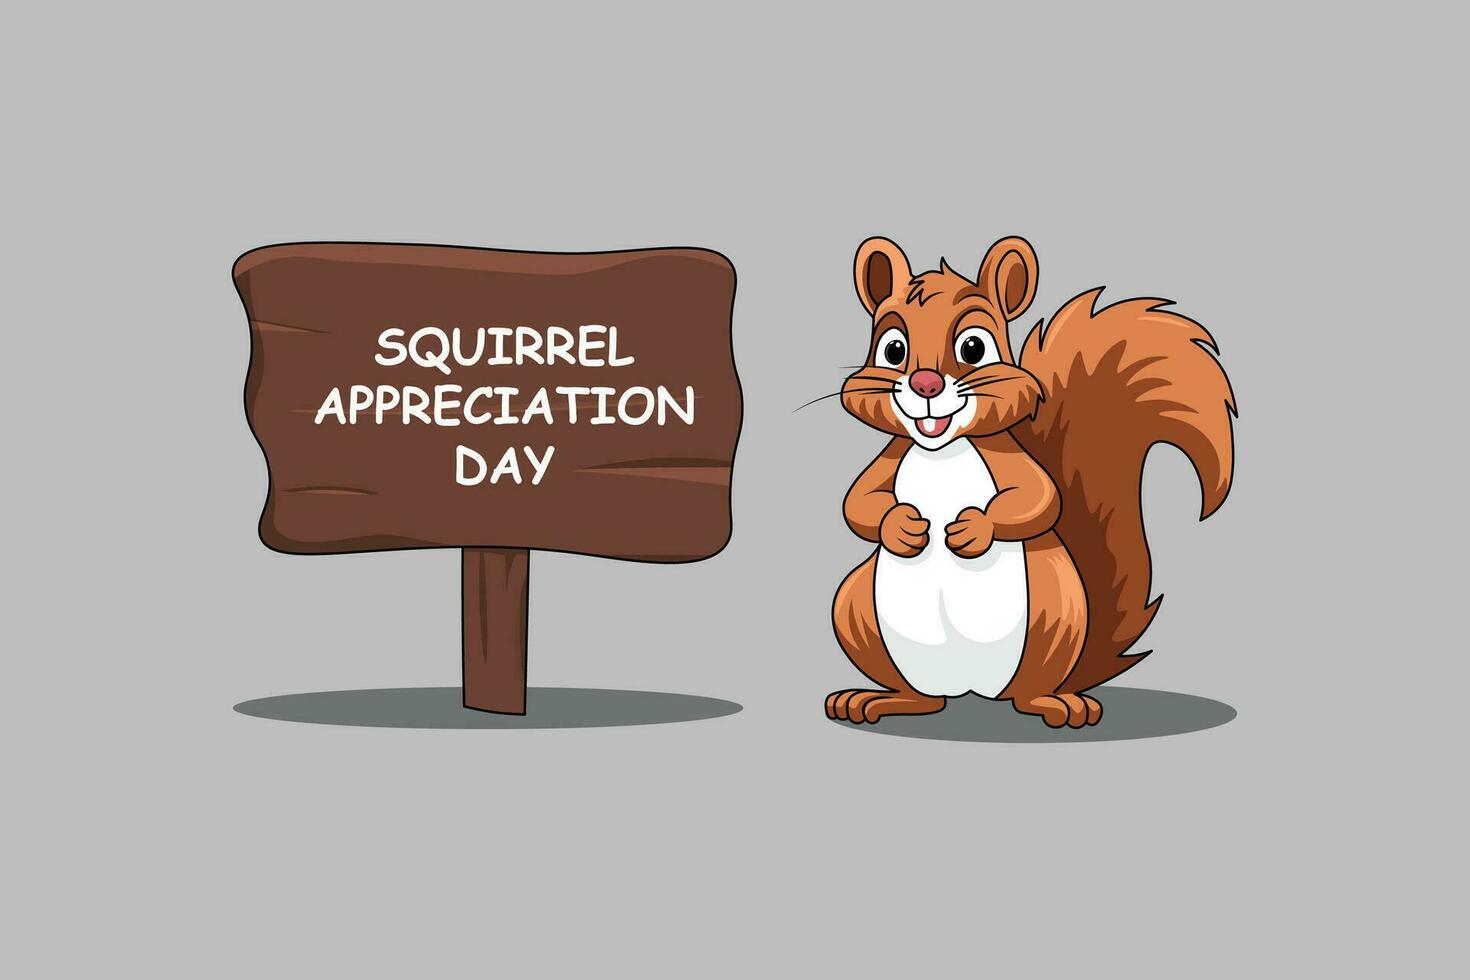 Squirrel Appreciation Day background. vector